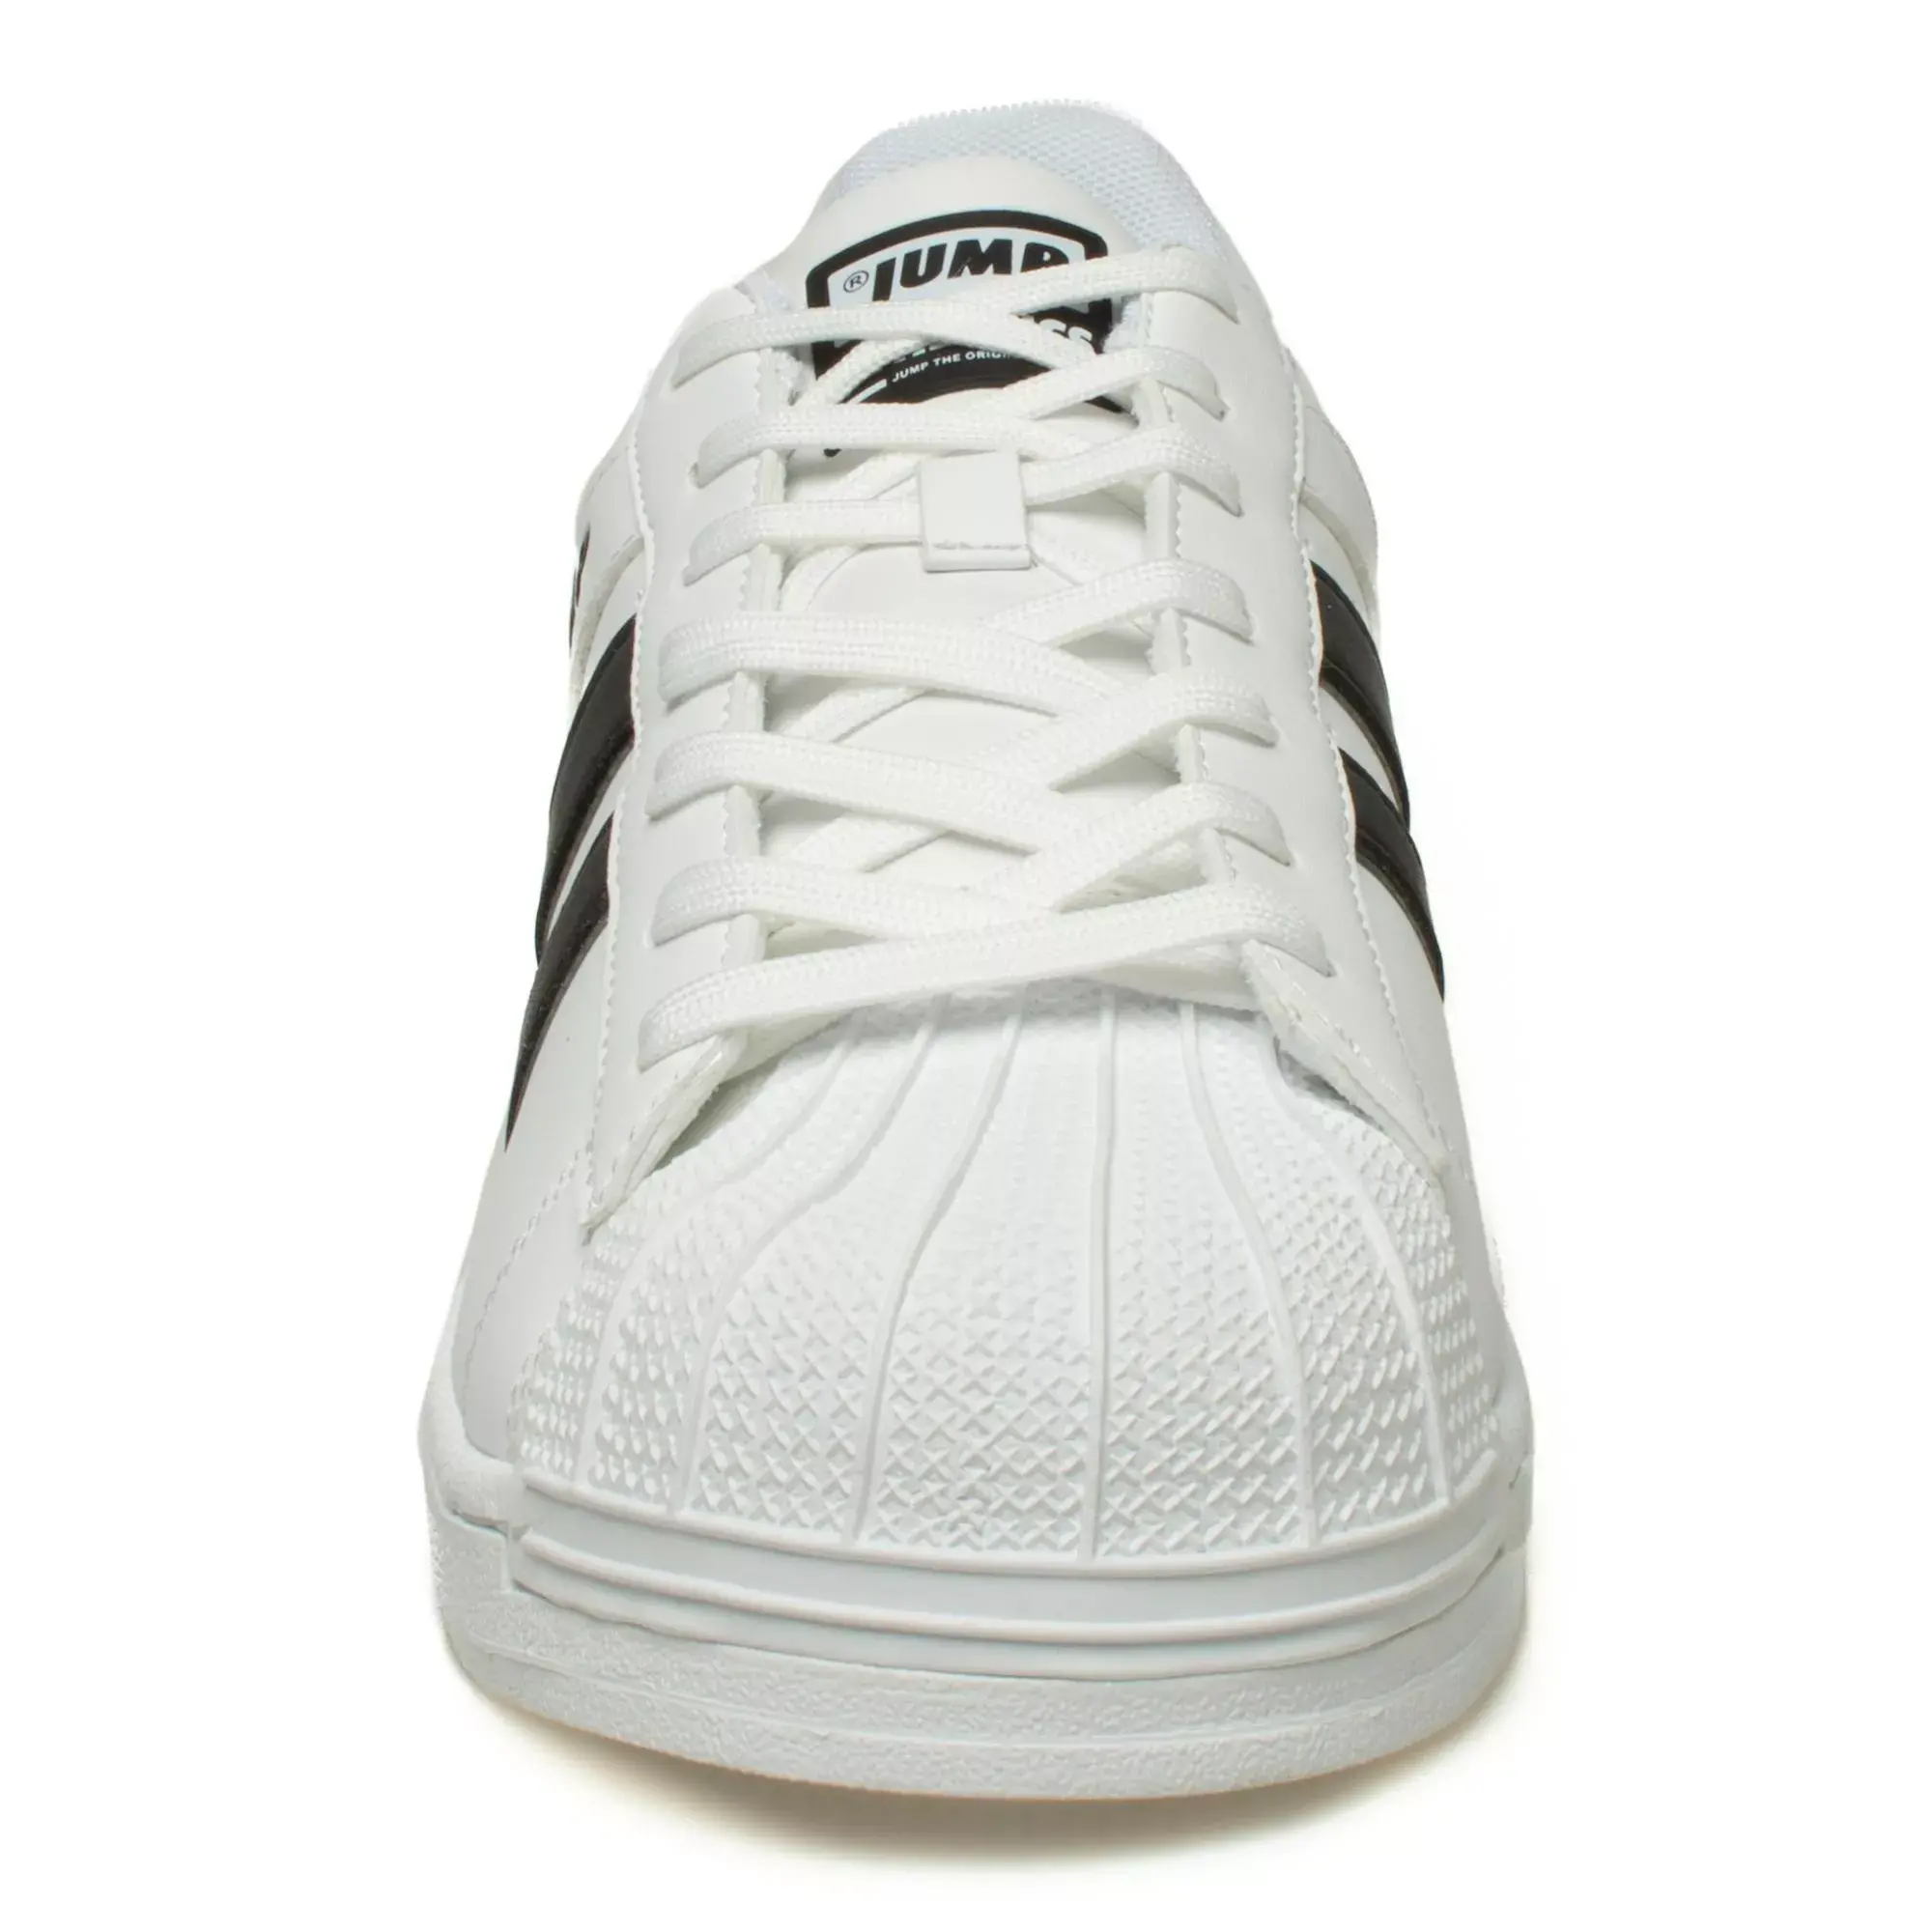 Jump 29055M Sneakers Beyaz Erkek Spor Ayakkabı - 3